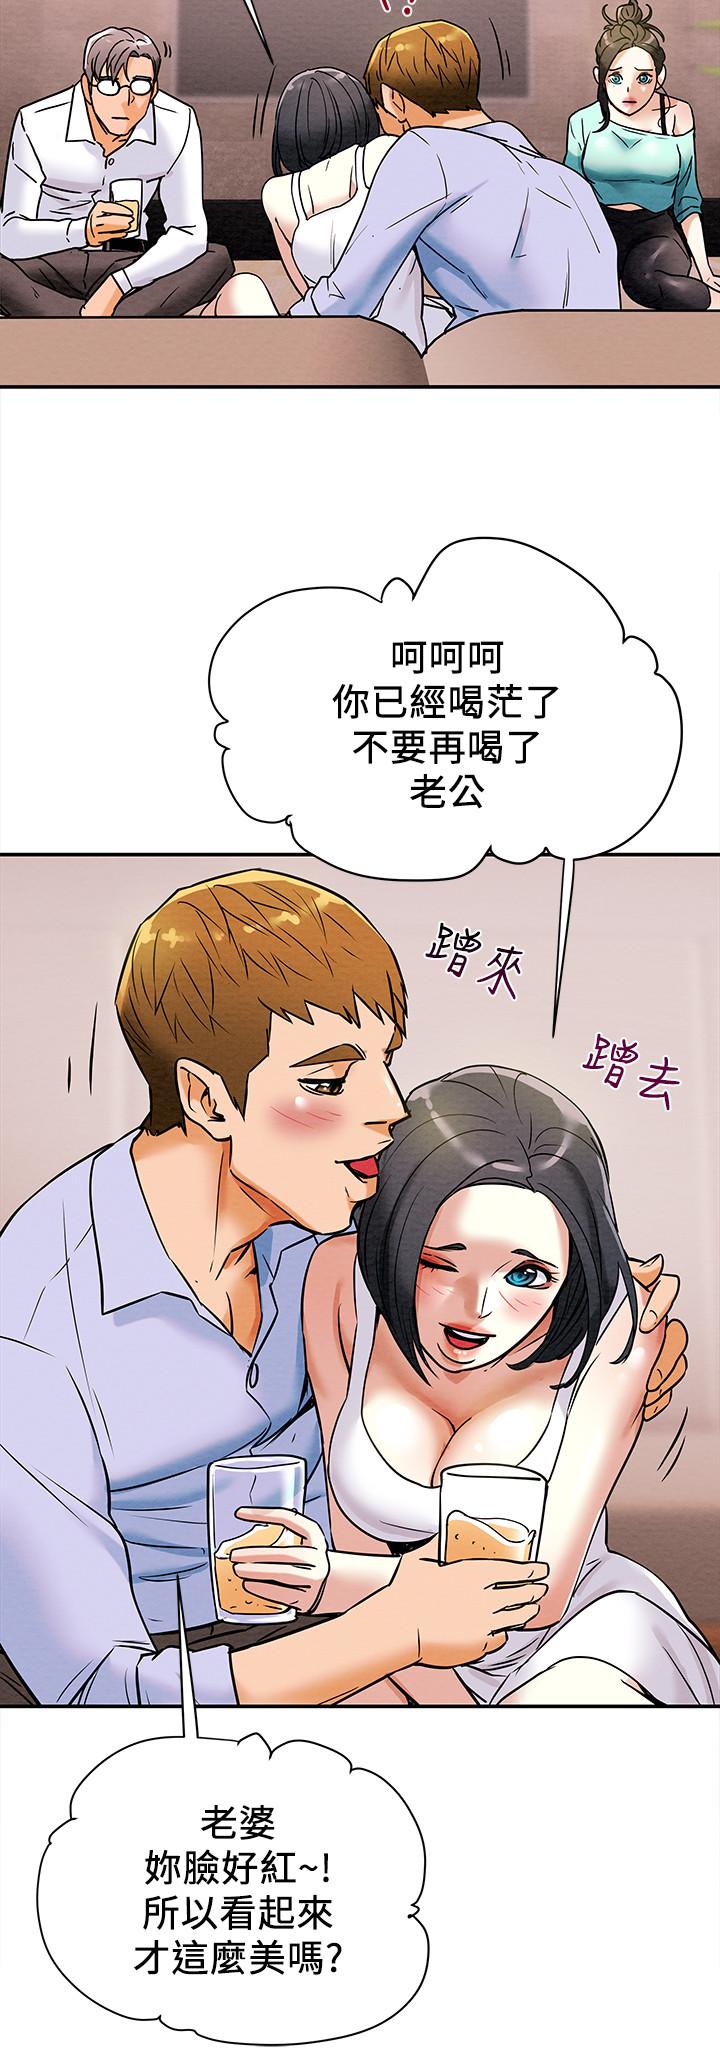 韩国污漫画 純情女攻略計劃 第6话-听着姐姐呻吟声湿了 23